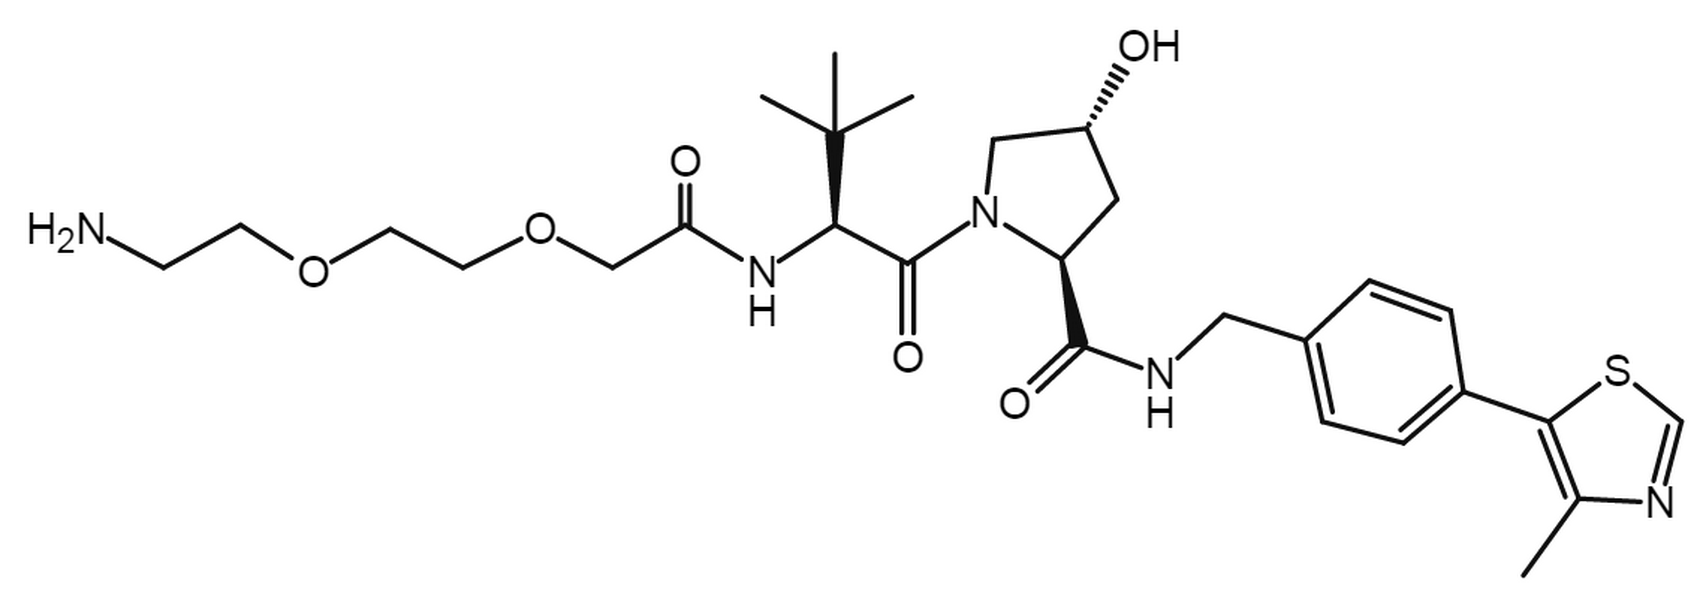 (S,R. S)-AHPC-PEG2-amine hydrochloride salt